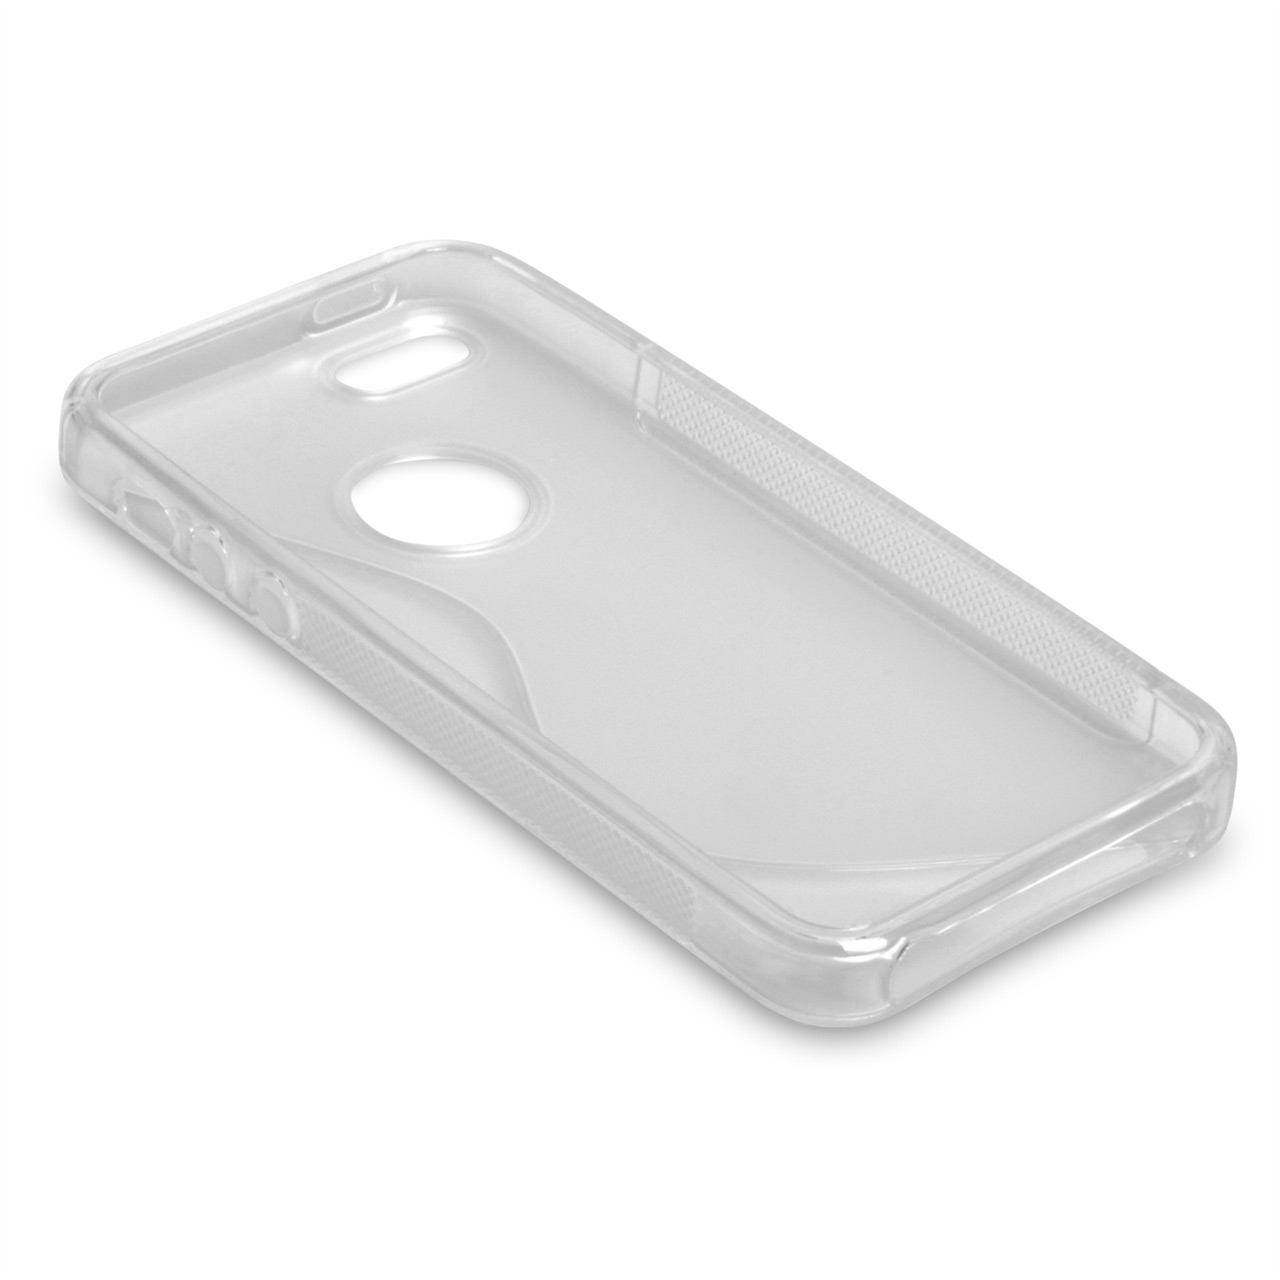 Caseflex iPhone 5 / 5S S-Line Gel Case - Clear